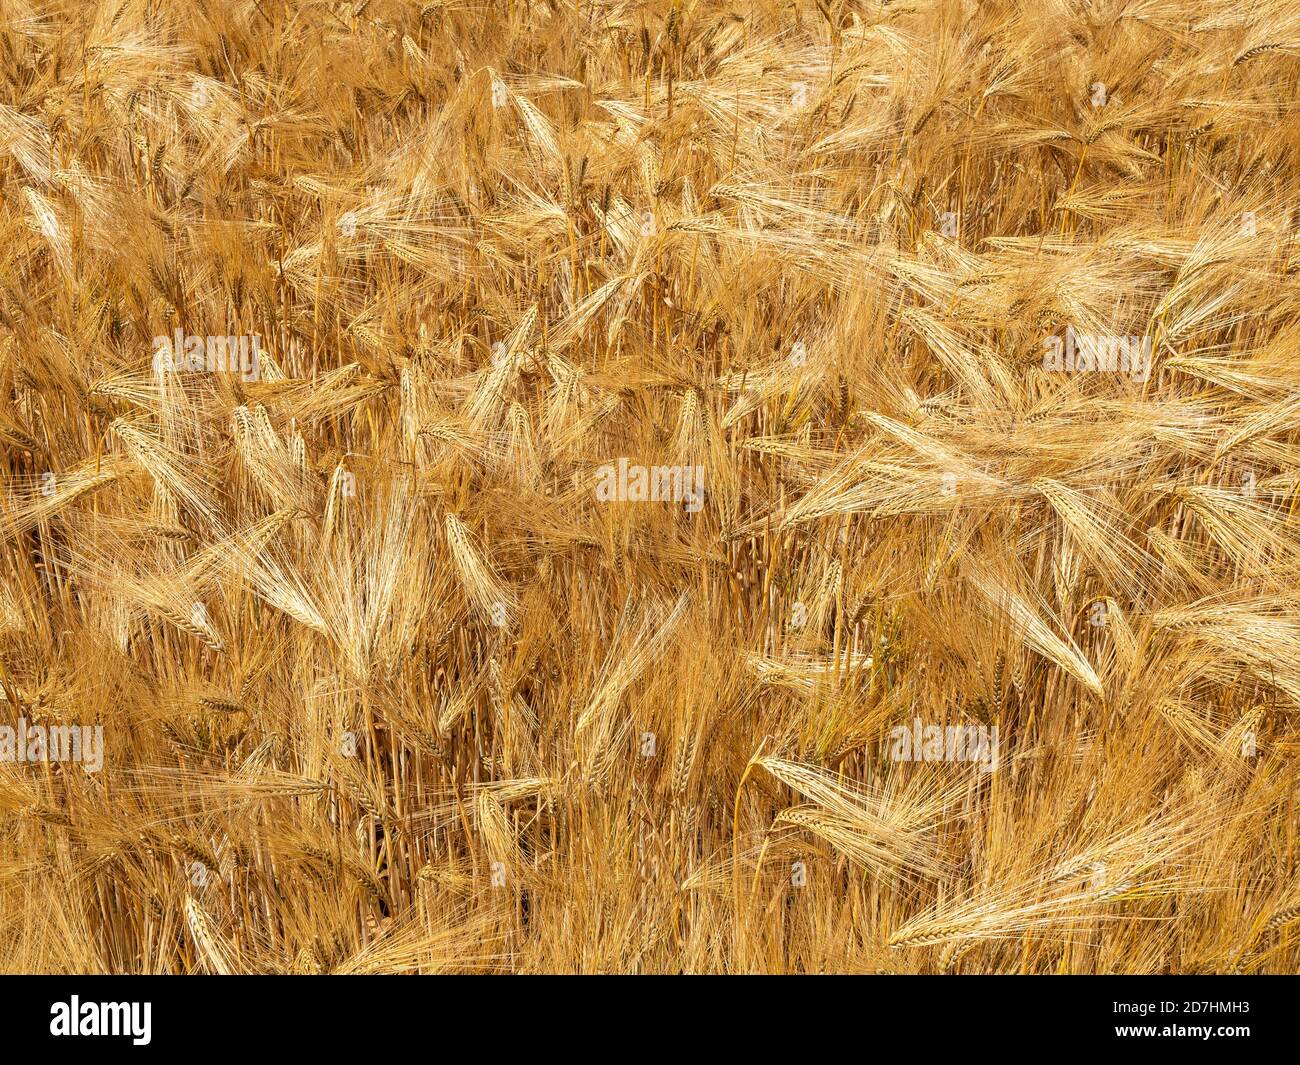 Nahaufnahme eines kleinen Teils eines Feldes Von 6 Reihe Gerste reif und golden bereit für die Ernte Stockfoto